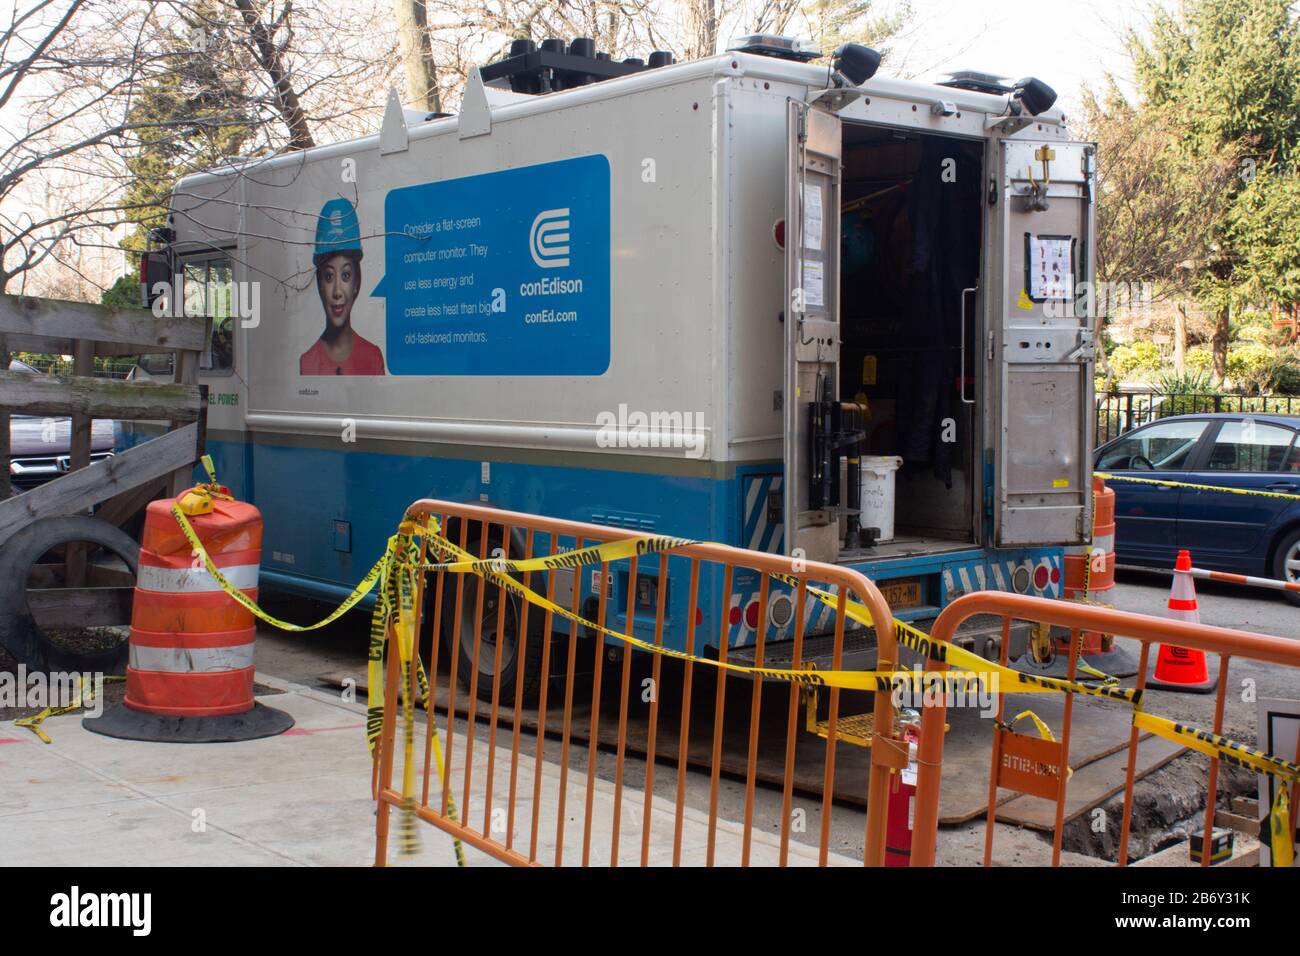 Ein Con edison Truck parkte während der Arbeit auf der Straße. Coned ist der Hauptversorger für Strom und Gas in New york City Stockfoto